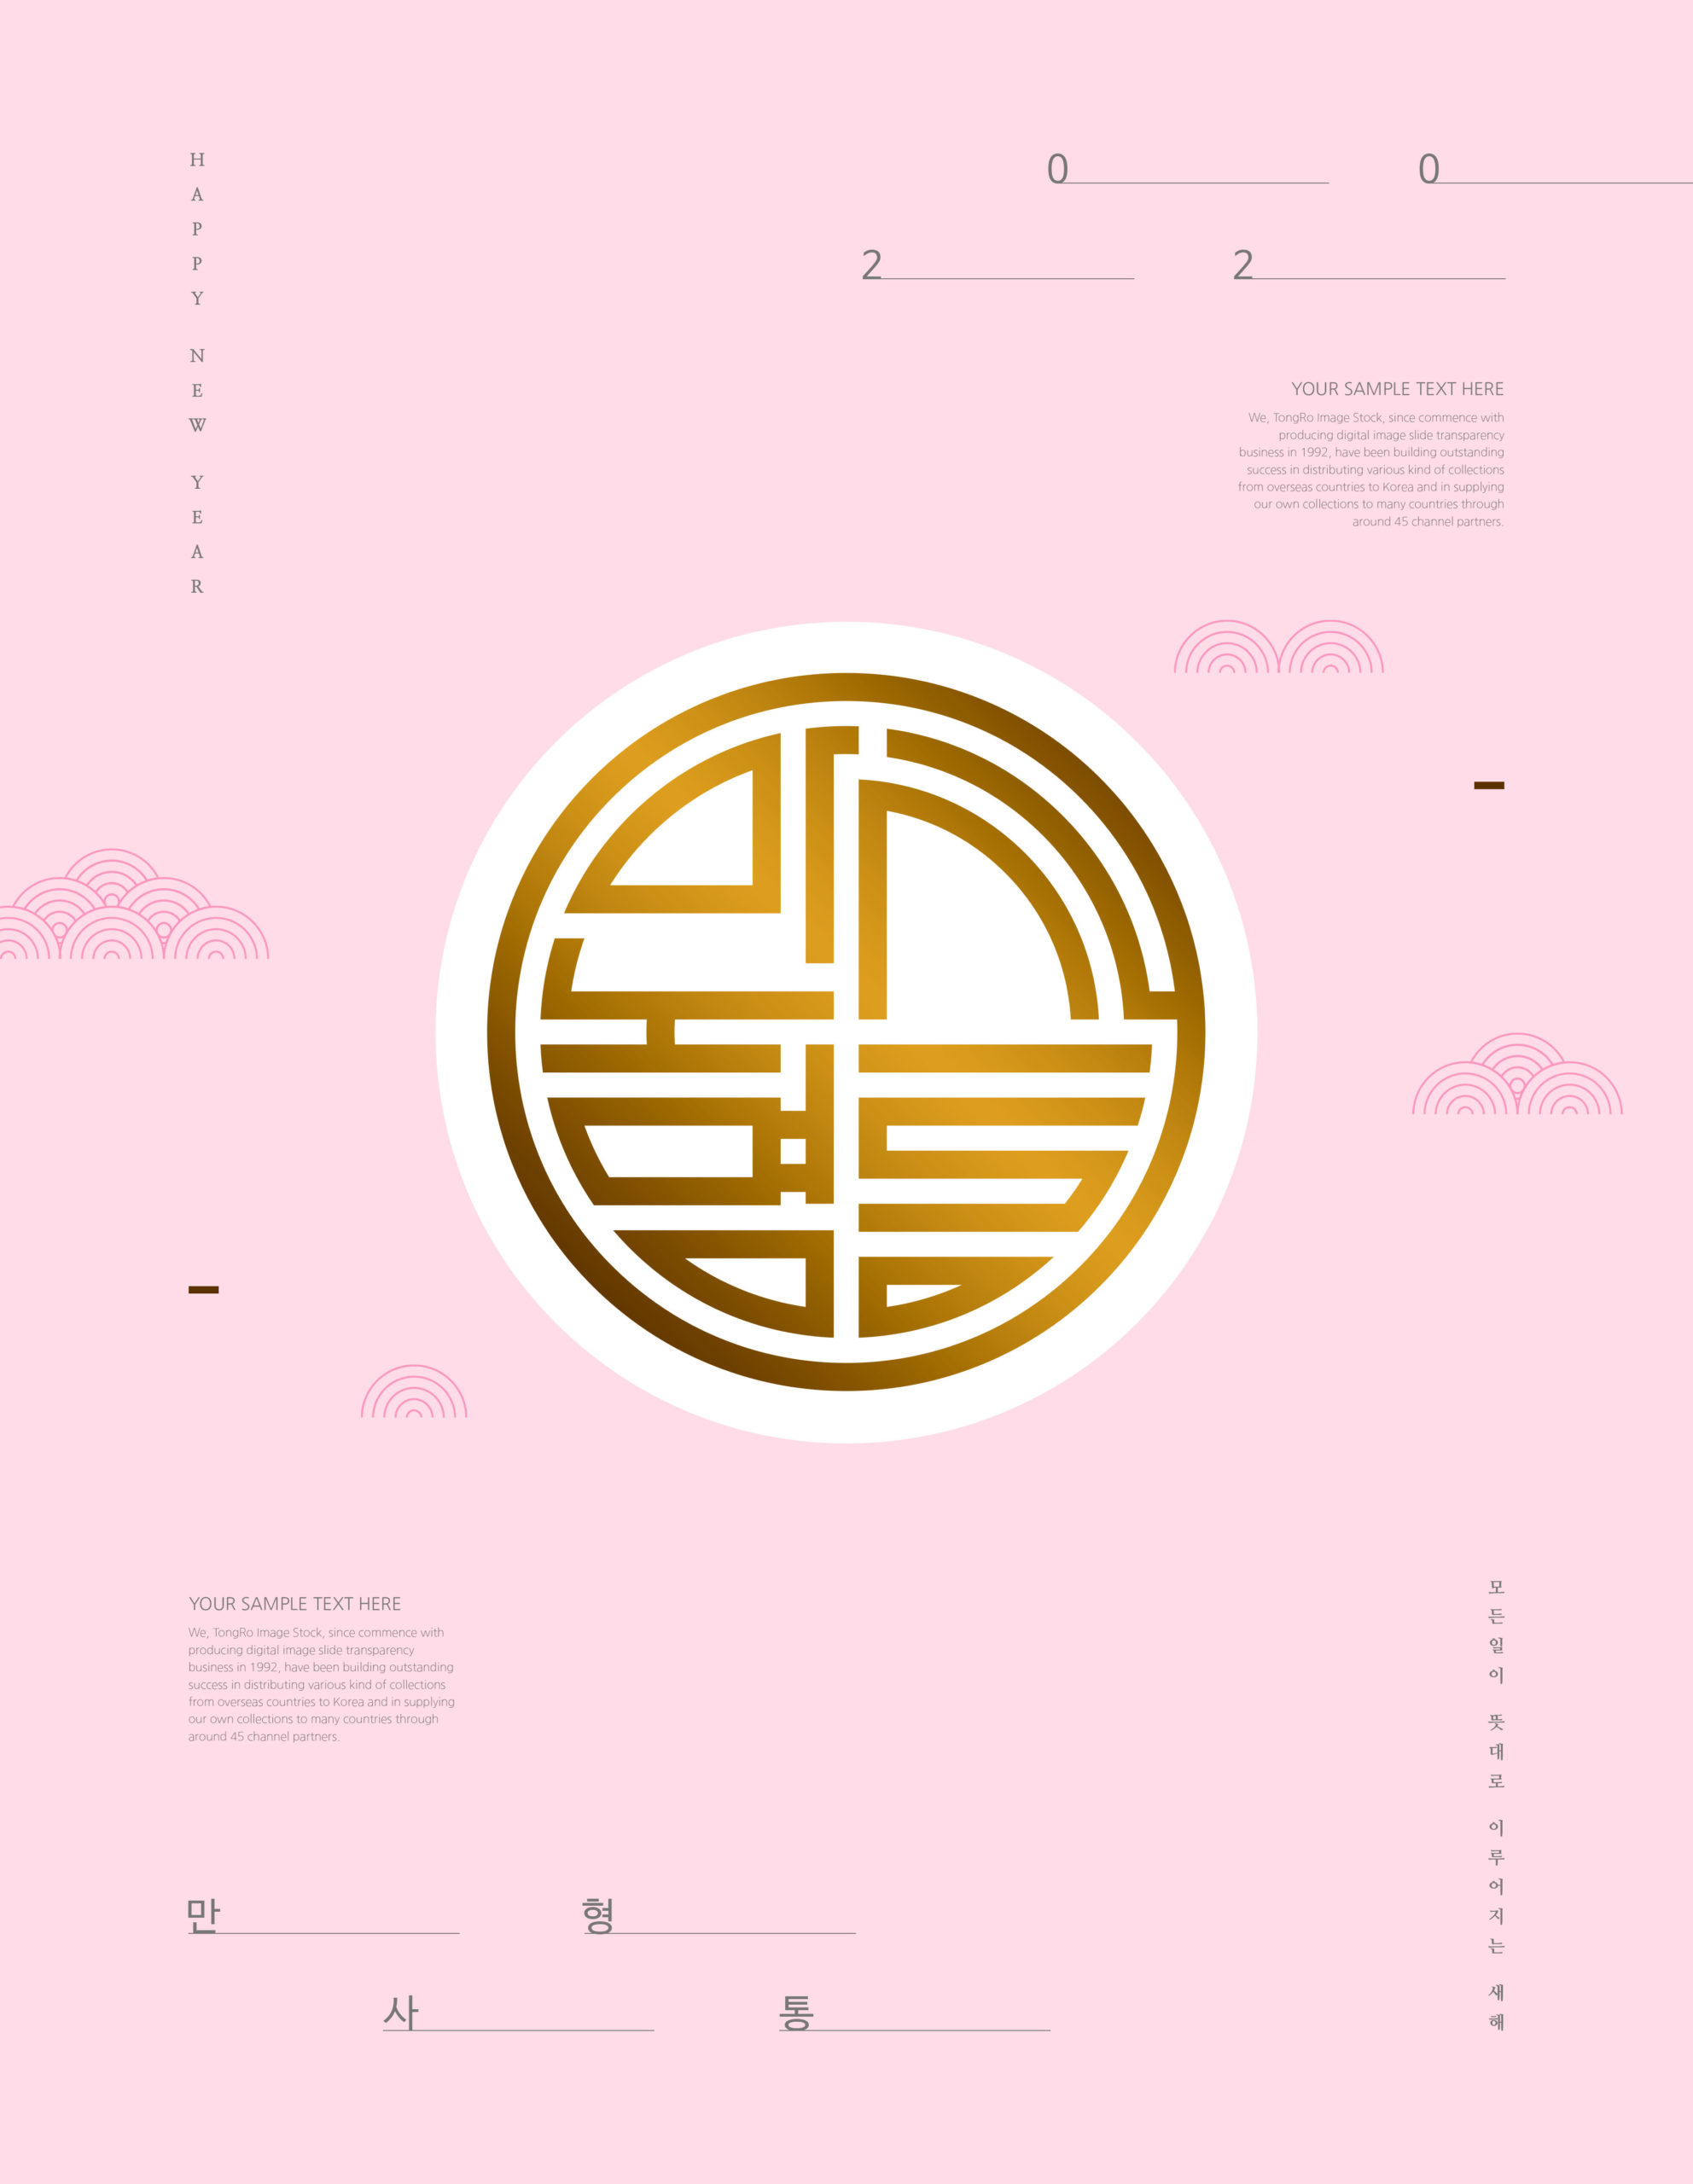 极简设计风格2020新年主题韩国海报PSD素材第一素材精选插图